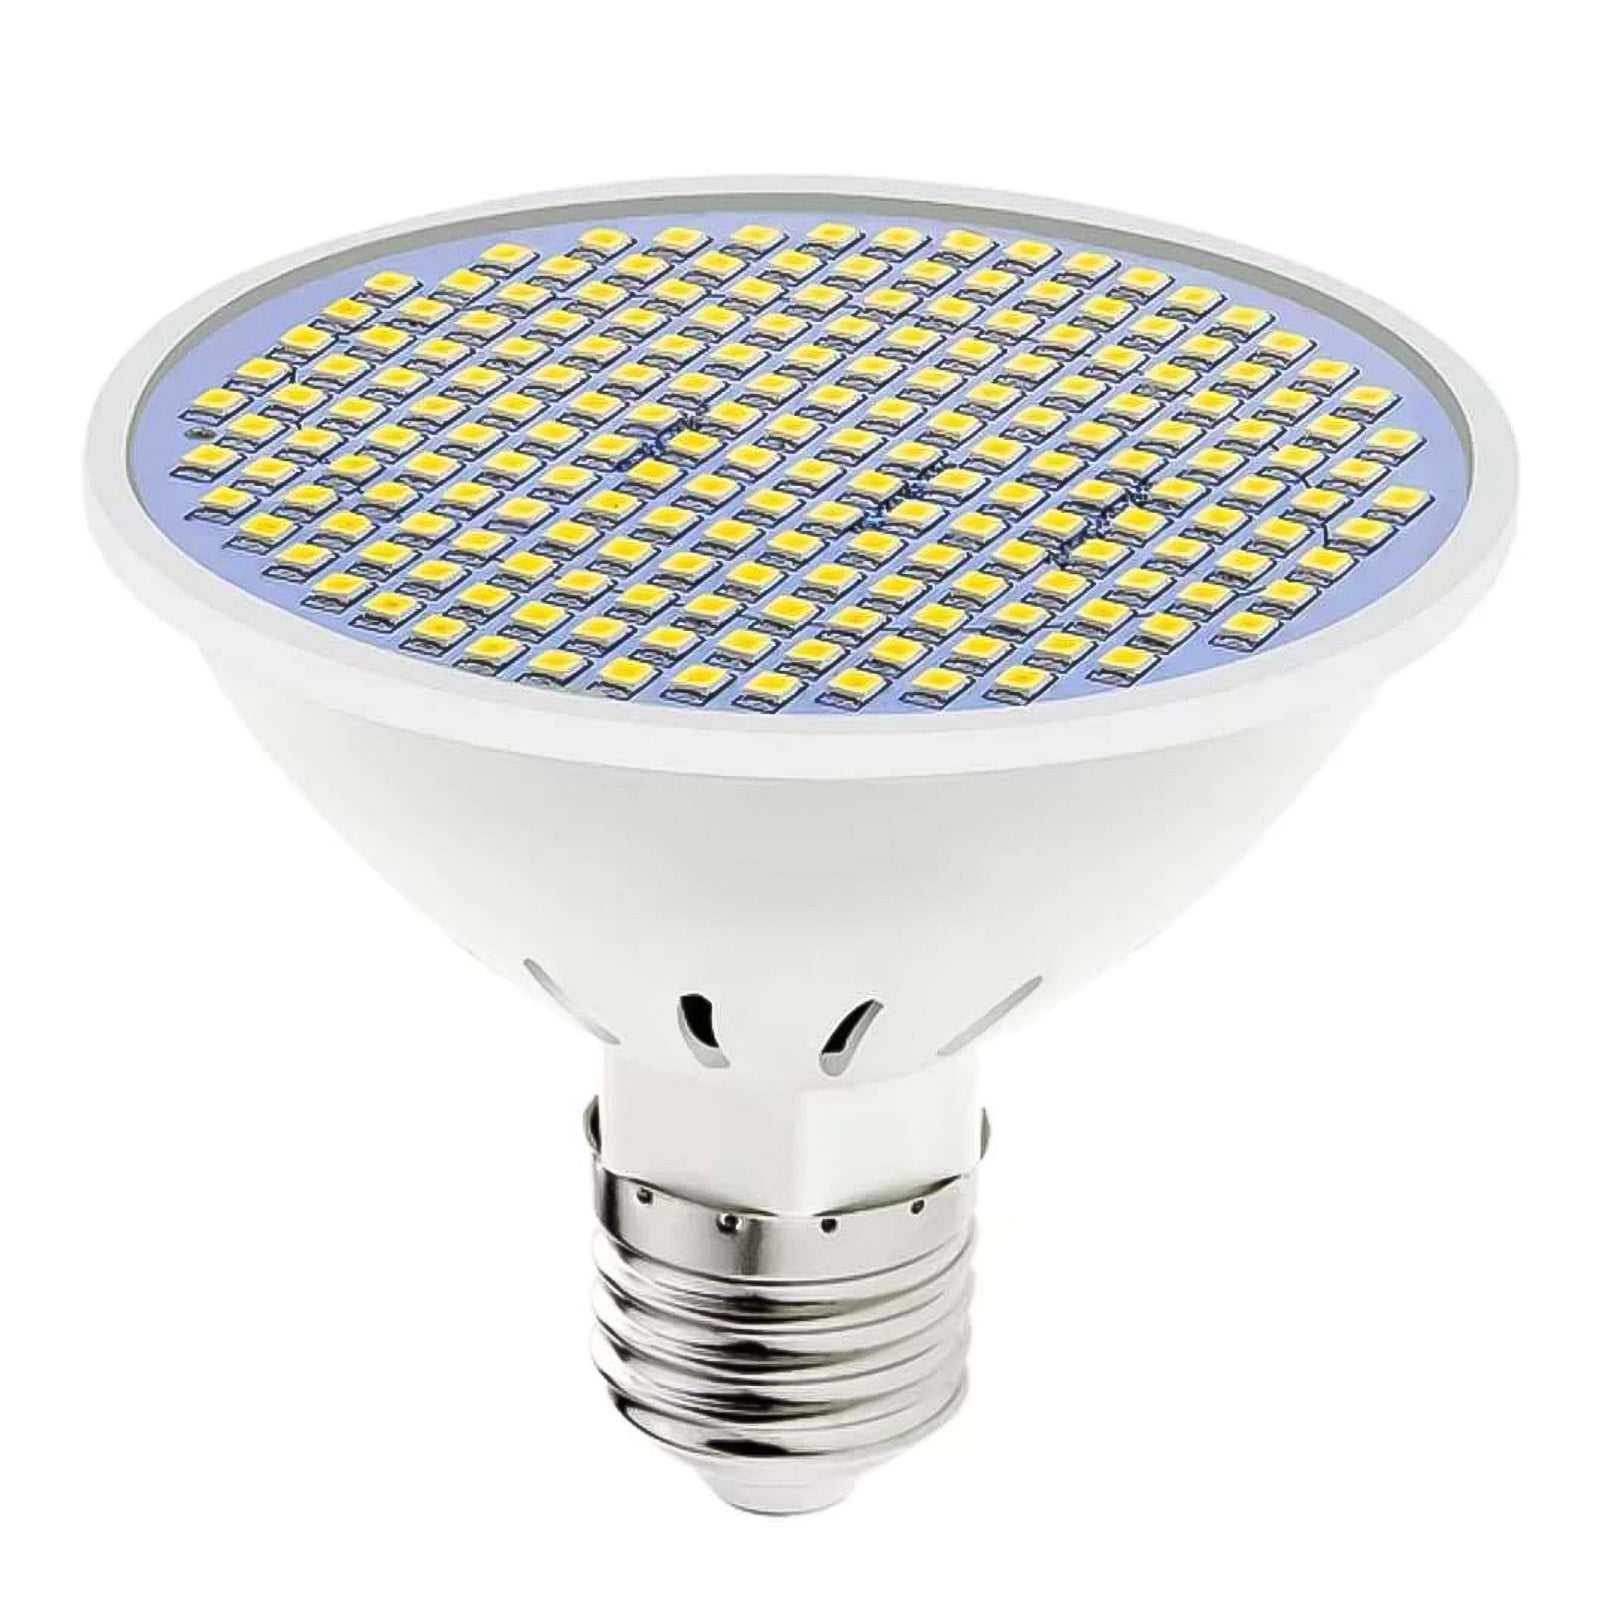 200 Led Grow Light Bulb Full Spectrum Grow Light E27 Lamp for Plant Hydroponic 